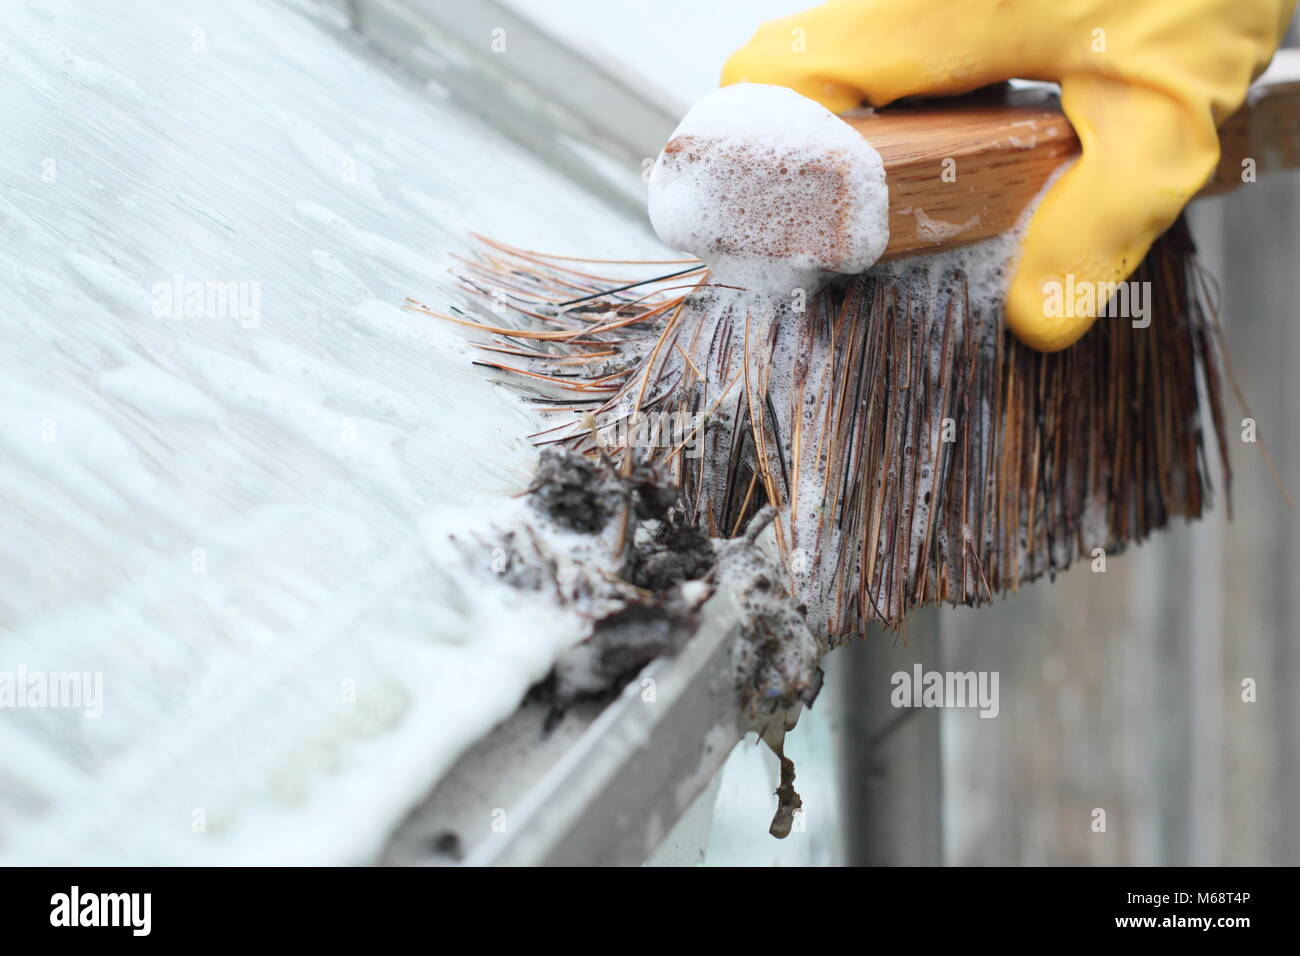 Les gouttières sont effacés de la crasse et windows arrosé avec de l'eau chaude savonneuse pour se préparer à de nouvelles saison de croissance dans un jardin, UK Banque D'Images